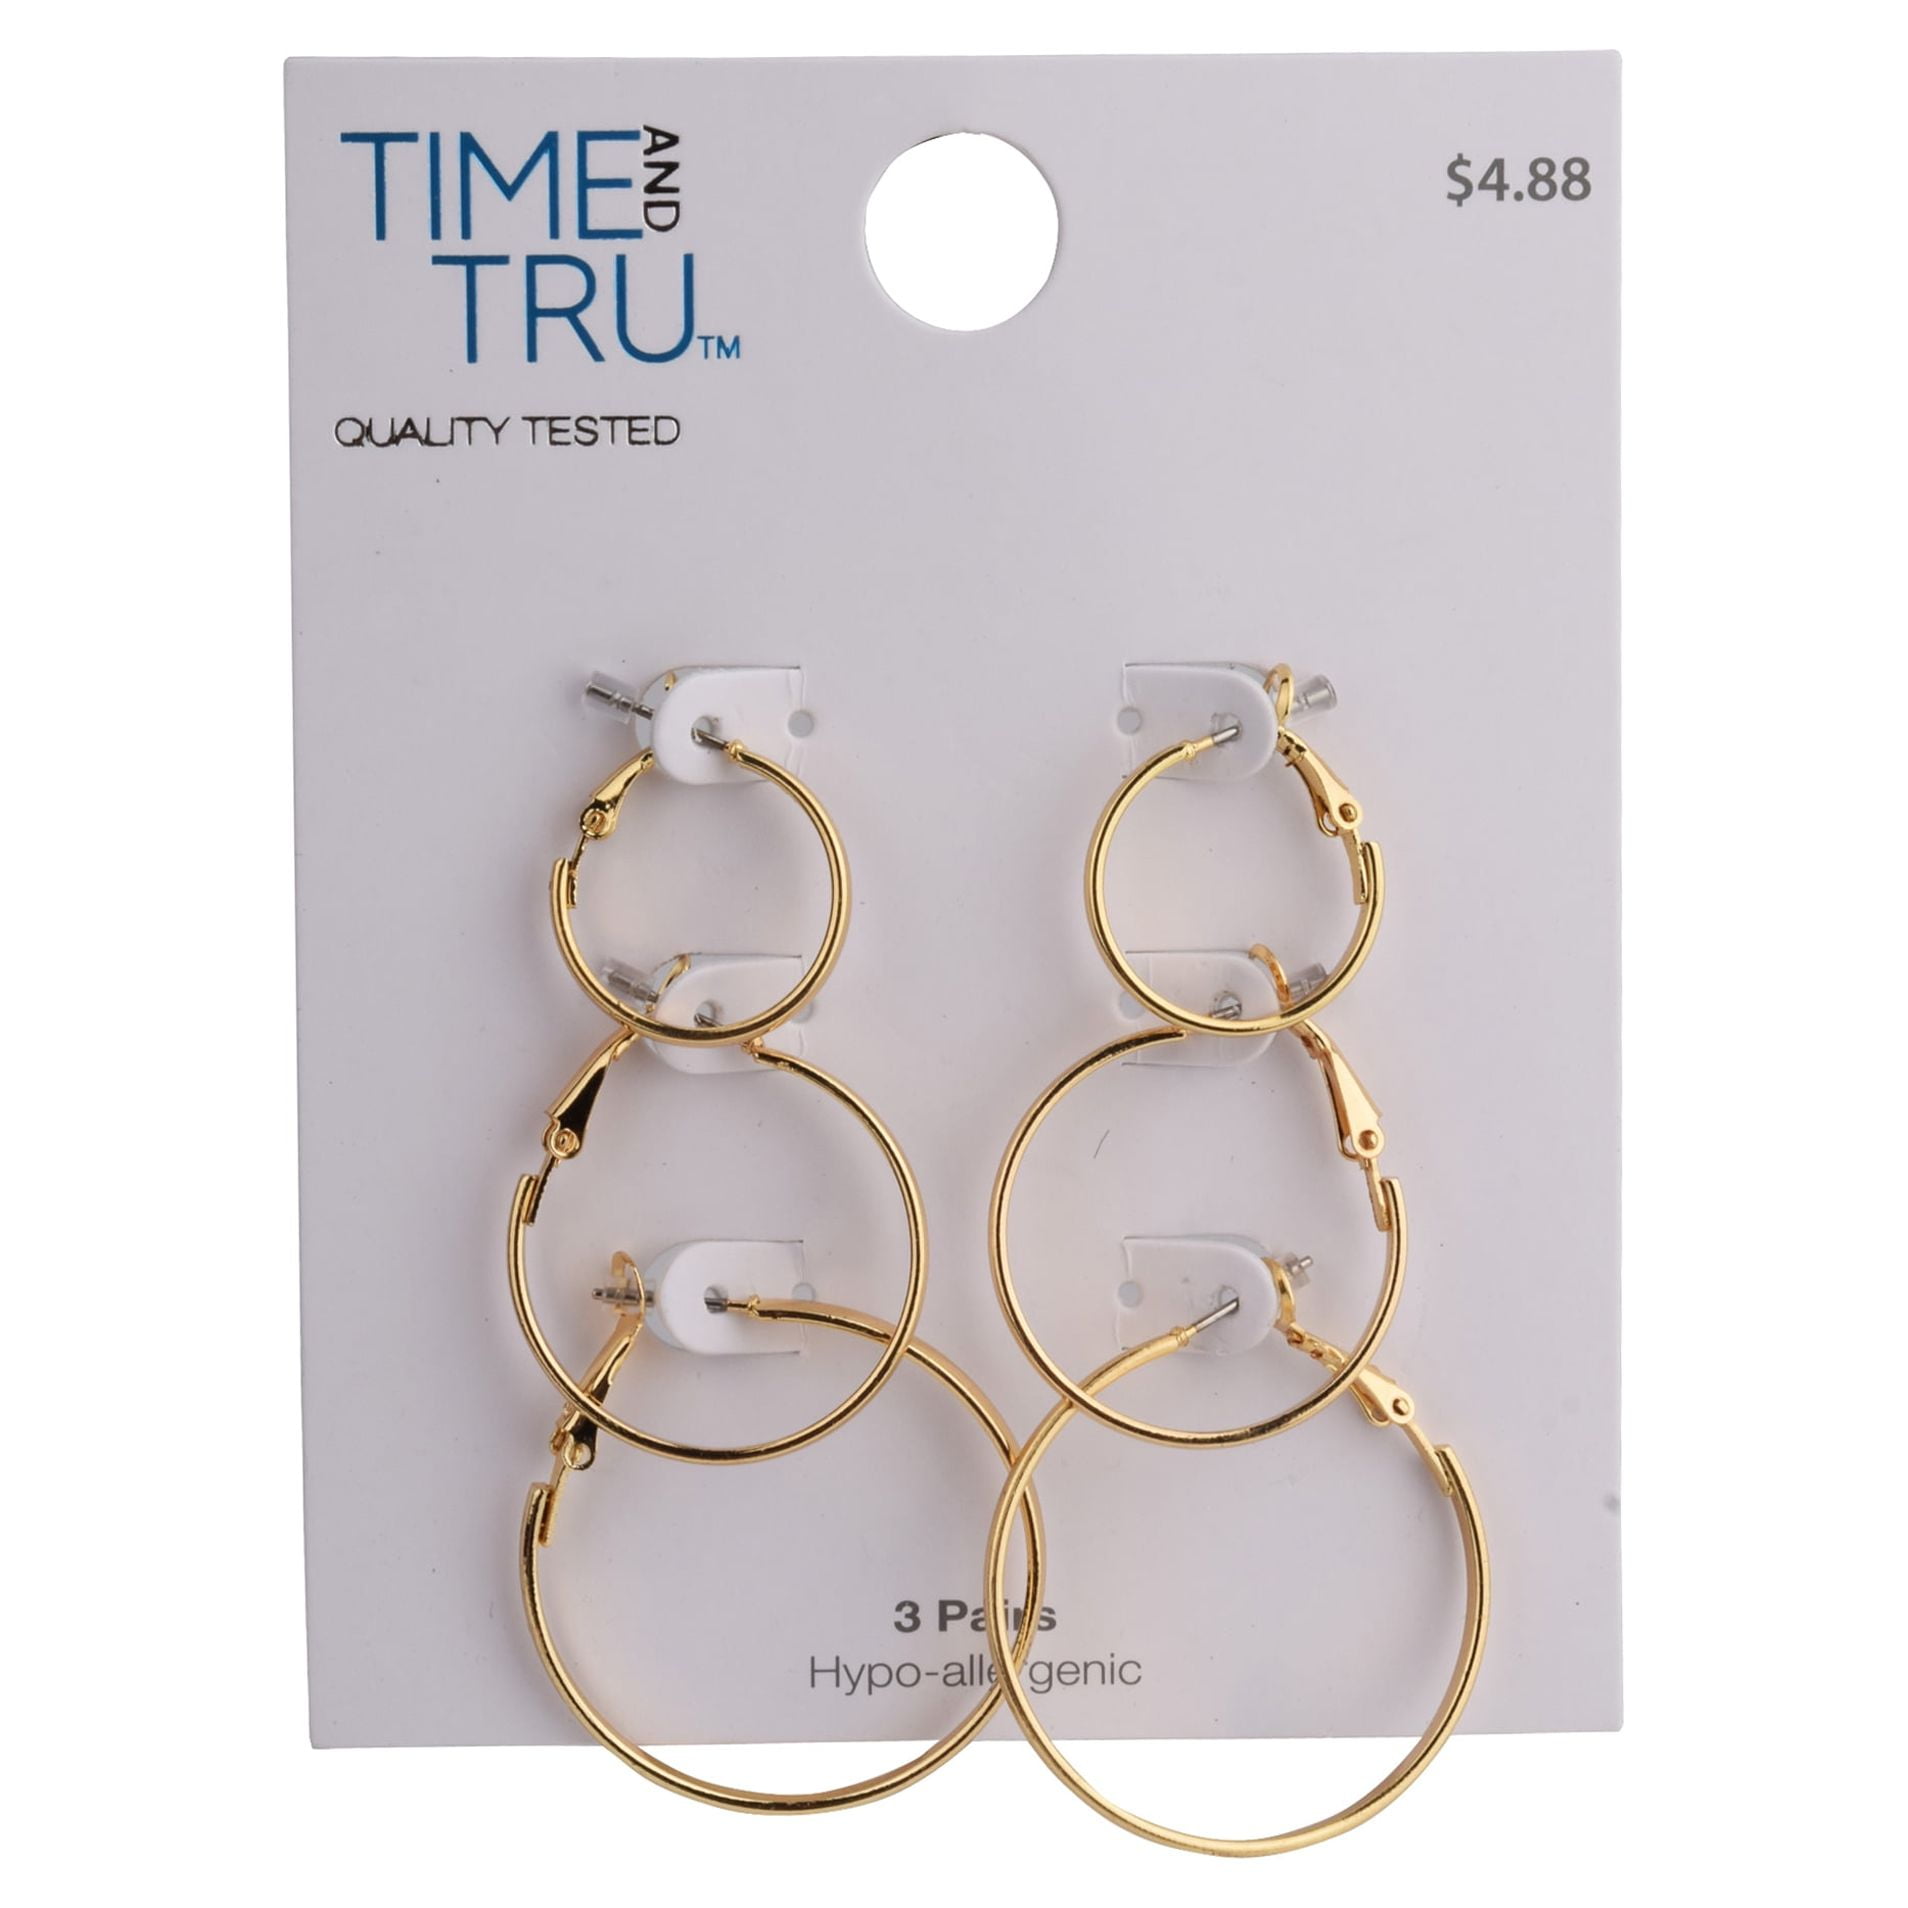 bebe Silver Tone Lock & Key Necklace & Earring Set 3 pr. Earrings  NEW